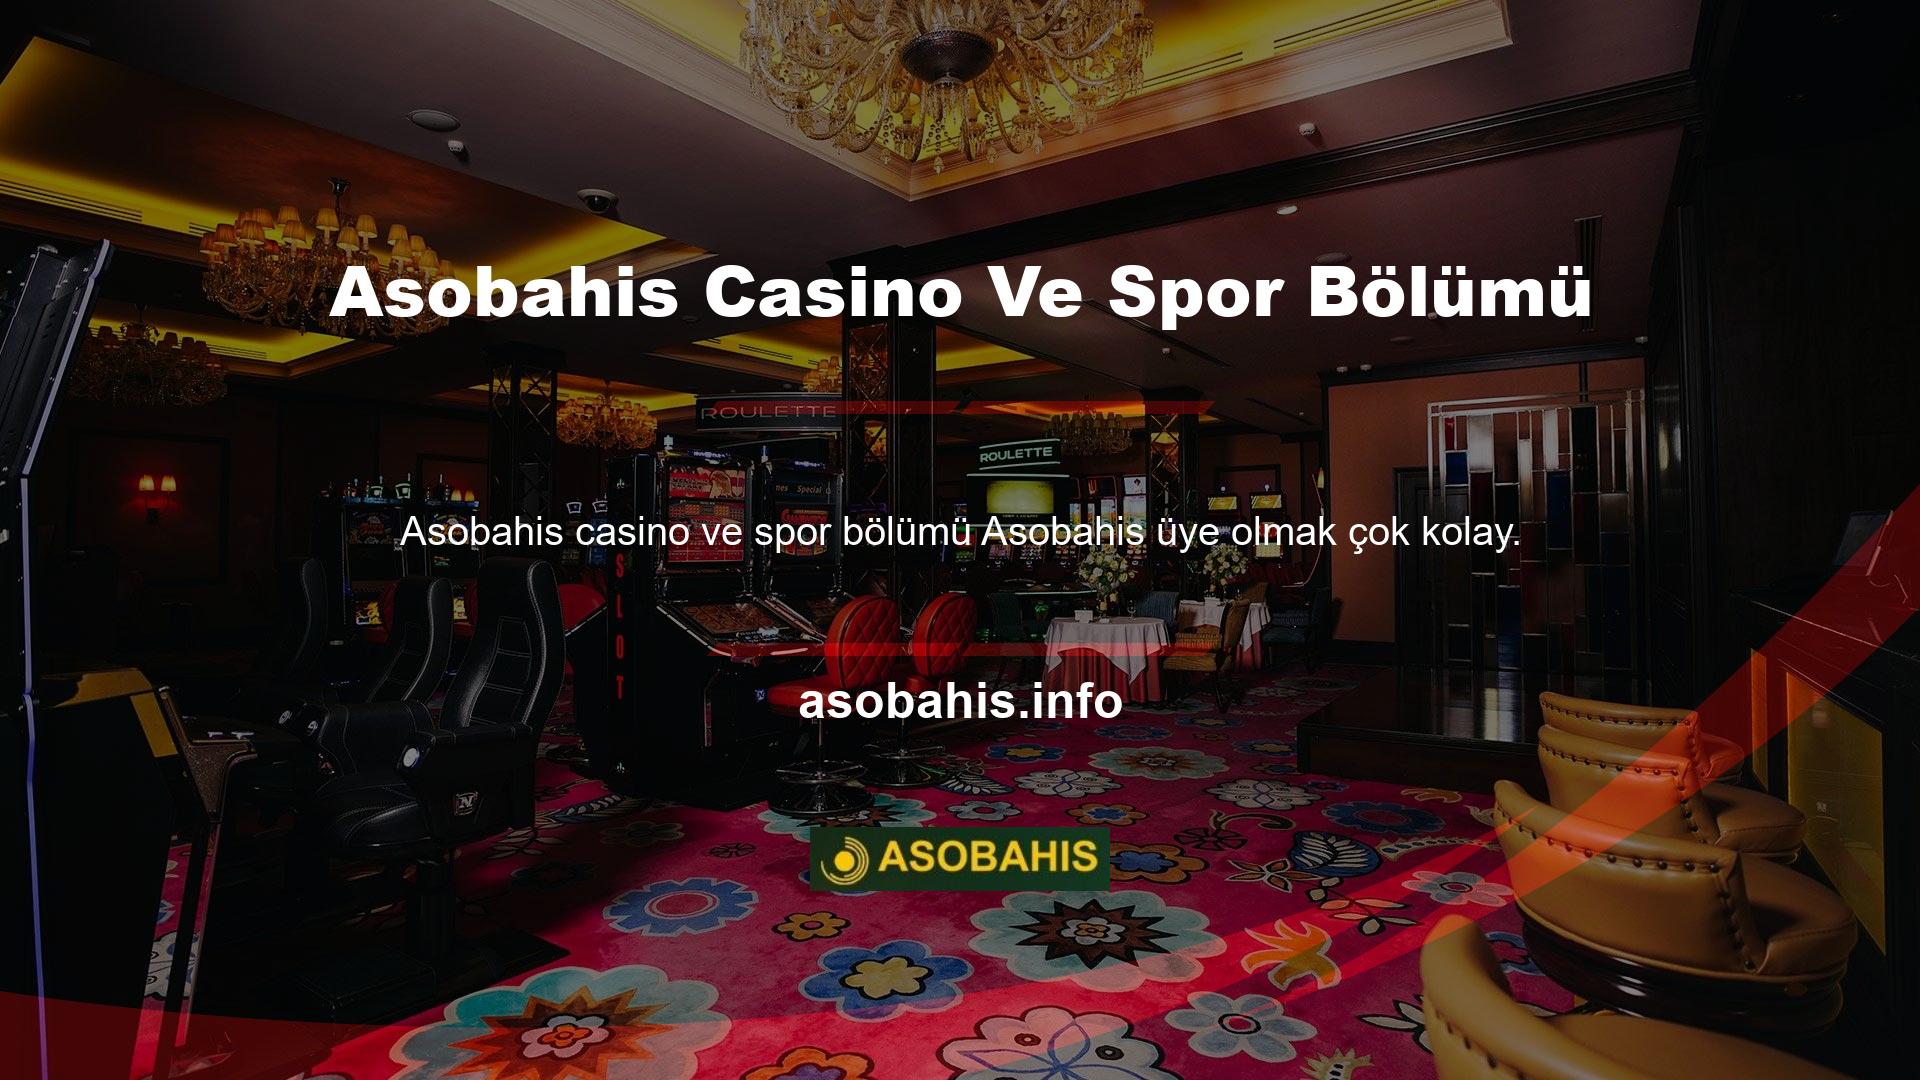 Bu sitenin Asobahis Spor ve Casino bölümünde canlı bahis oynamak veya canlı casino oynamak için sisteme üye olmalısınız ve bu, platformun yeni kullanıcıları tarafından sorulan en yaygın sorulardan biridir